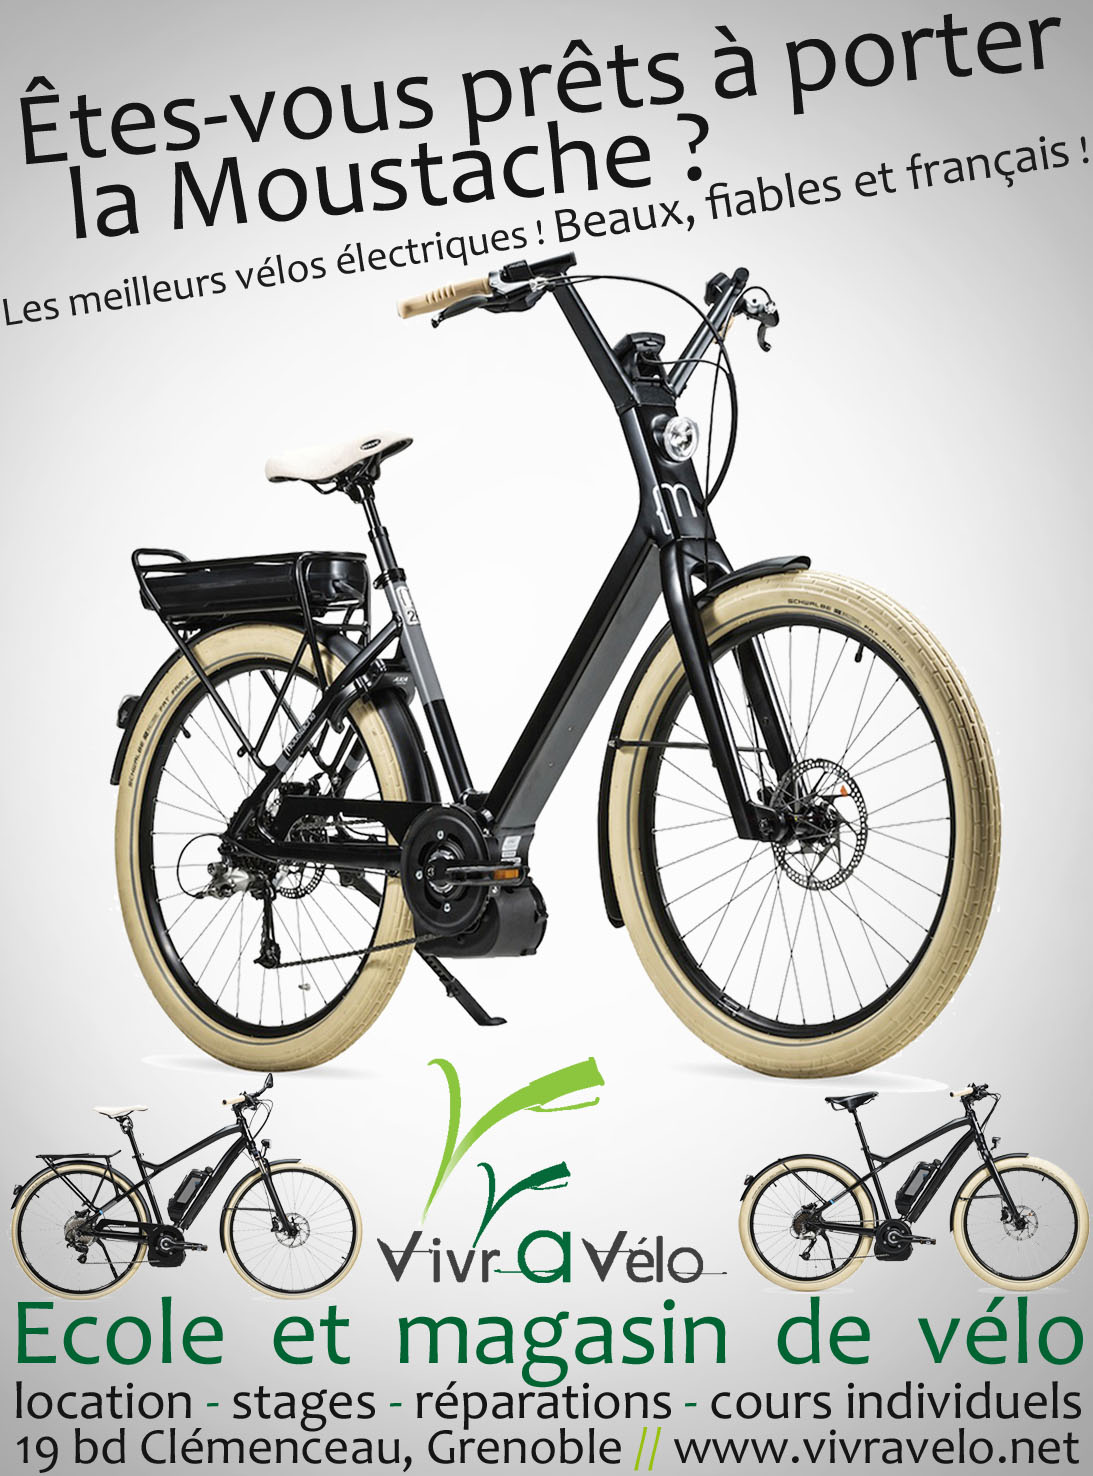 Publicité de juin 2013, le moteur Bosch et les vélos Moustache étaient déjà au top